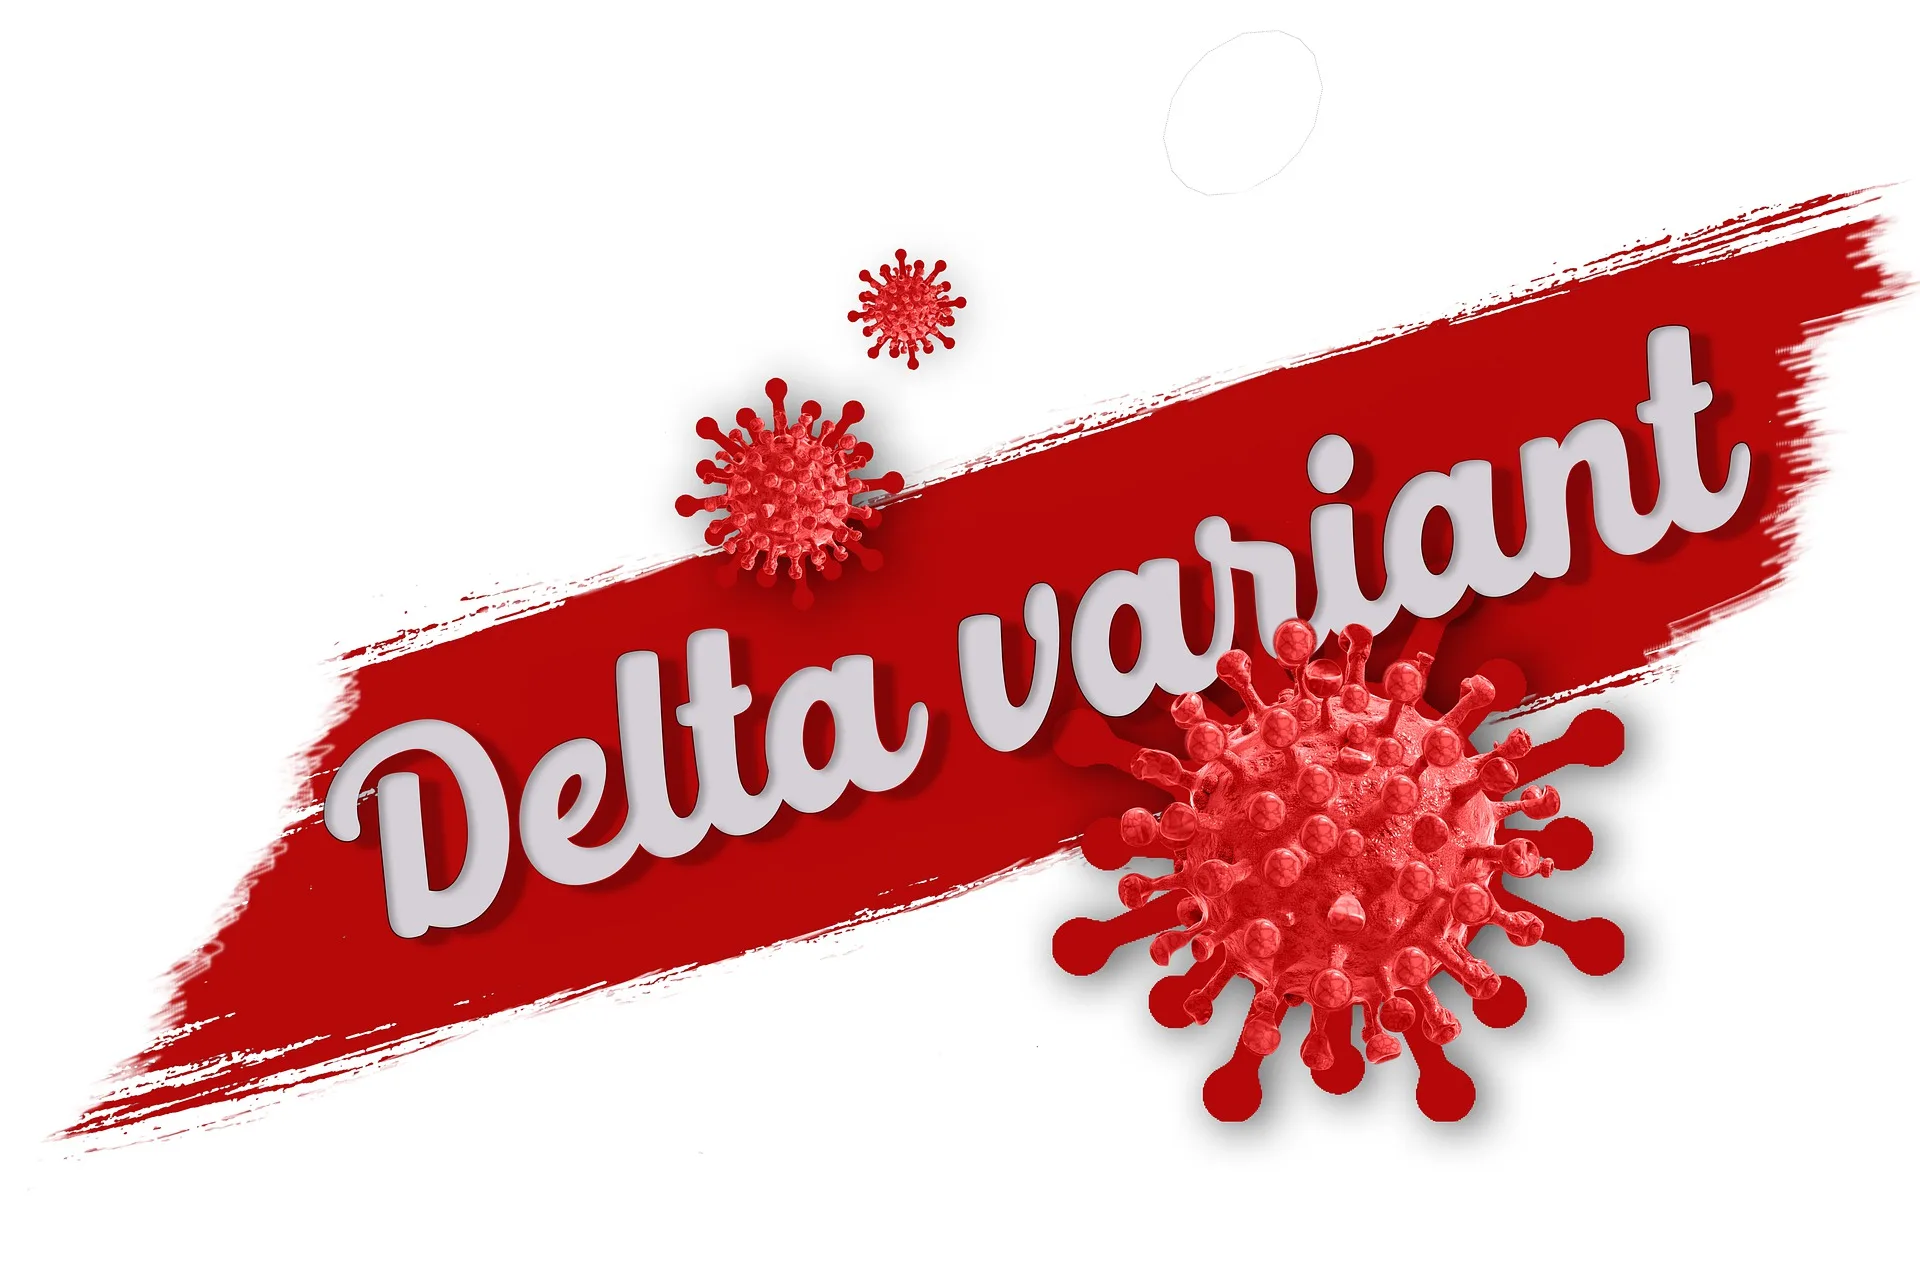 Delta Variant Symptoms